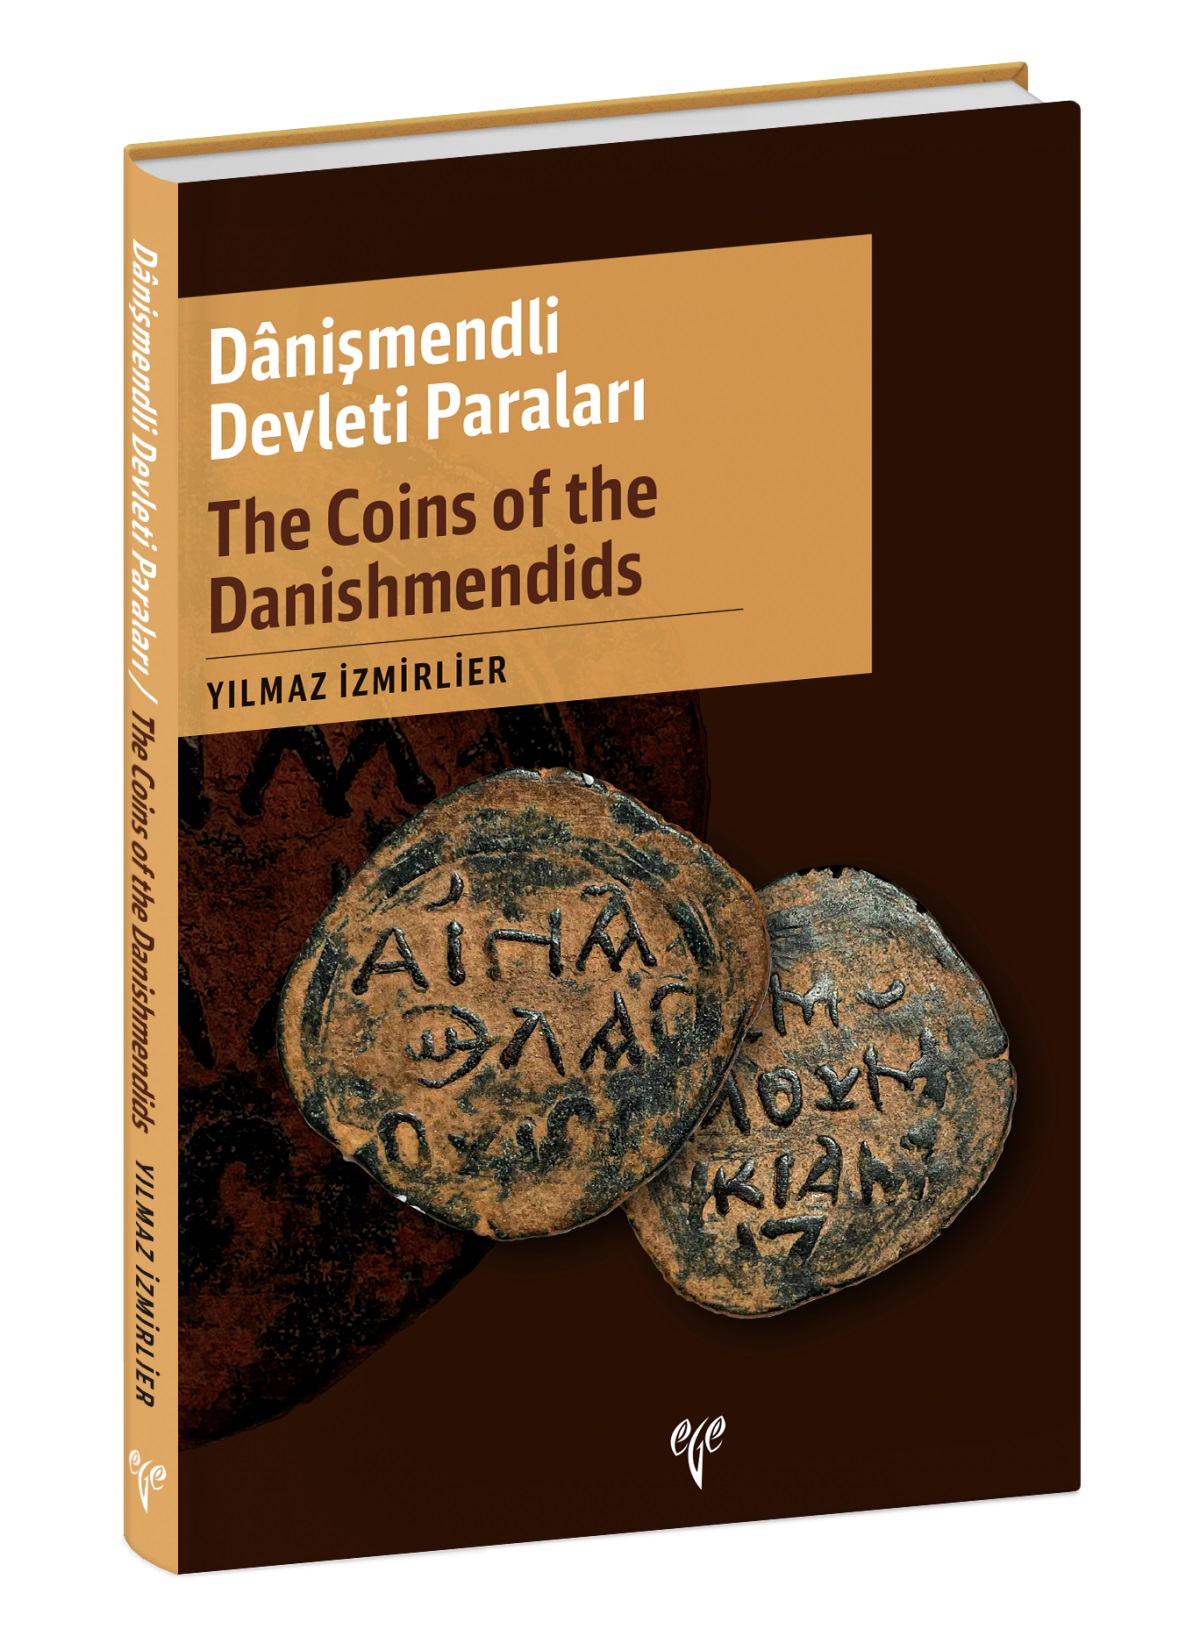 Izmirlier, Yılmaz : The Coins of the Danishmendids / Danişmendli Devleti Paraları